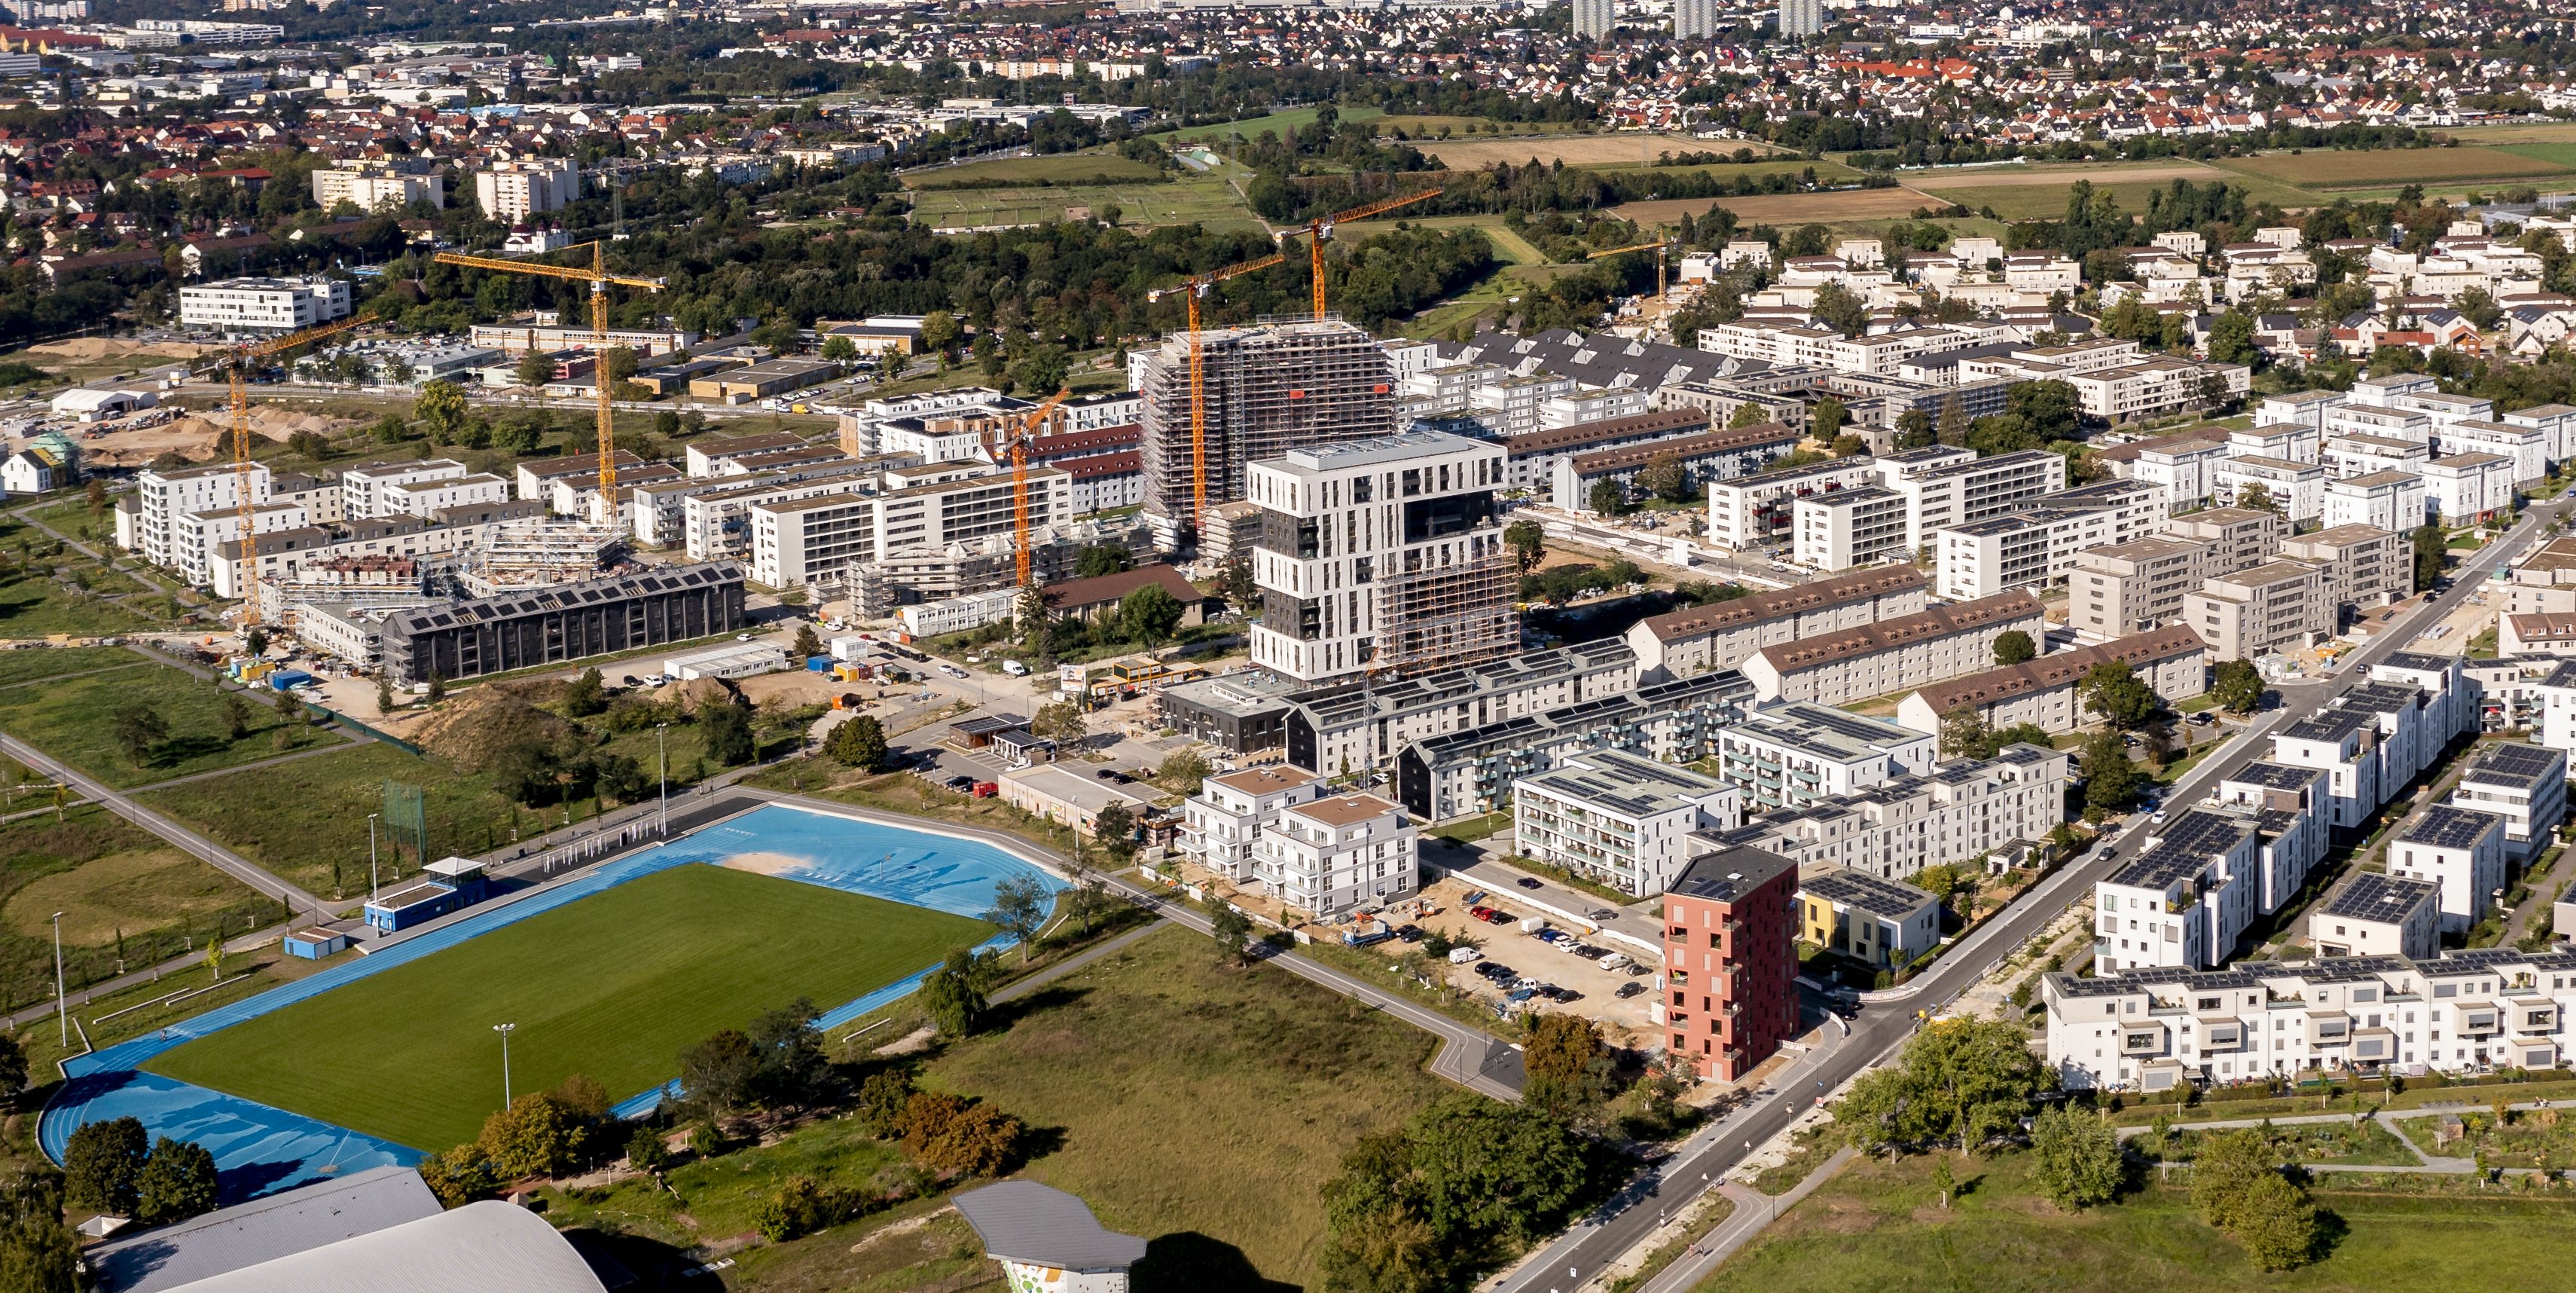 Luftbild vom Stadtteil FRANKLIN mit Blick auf den Sportplatz und die Hochpunkte E und O.